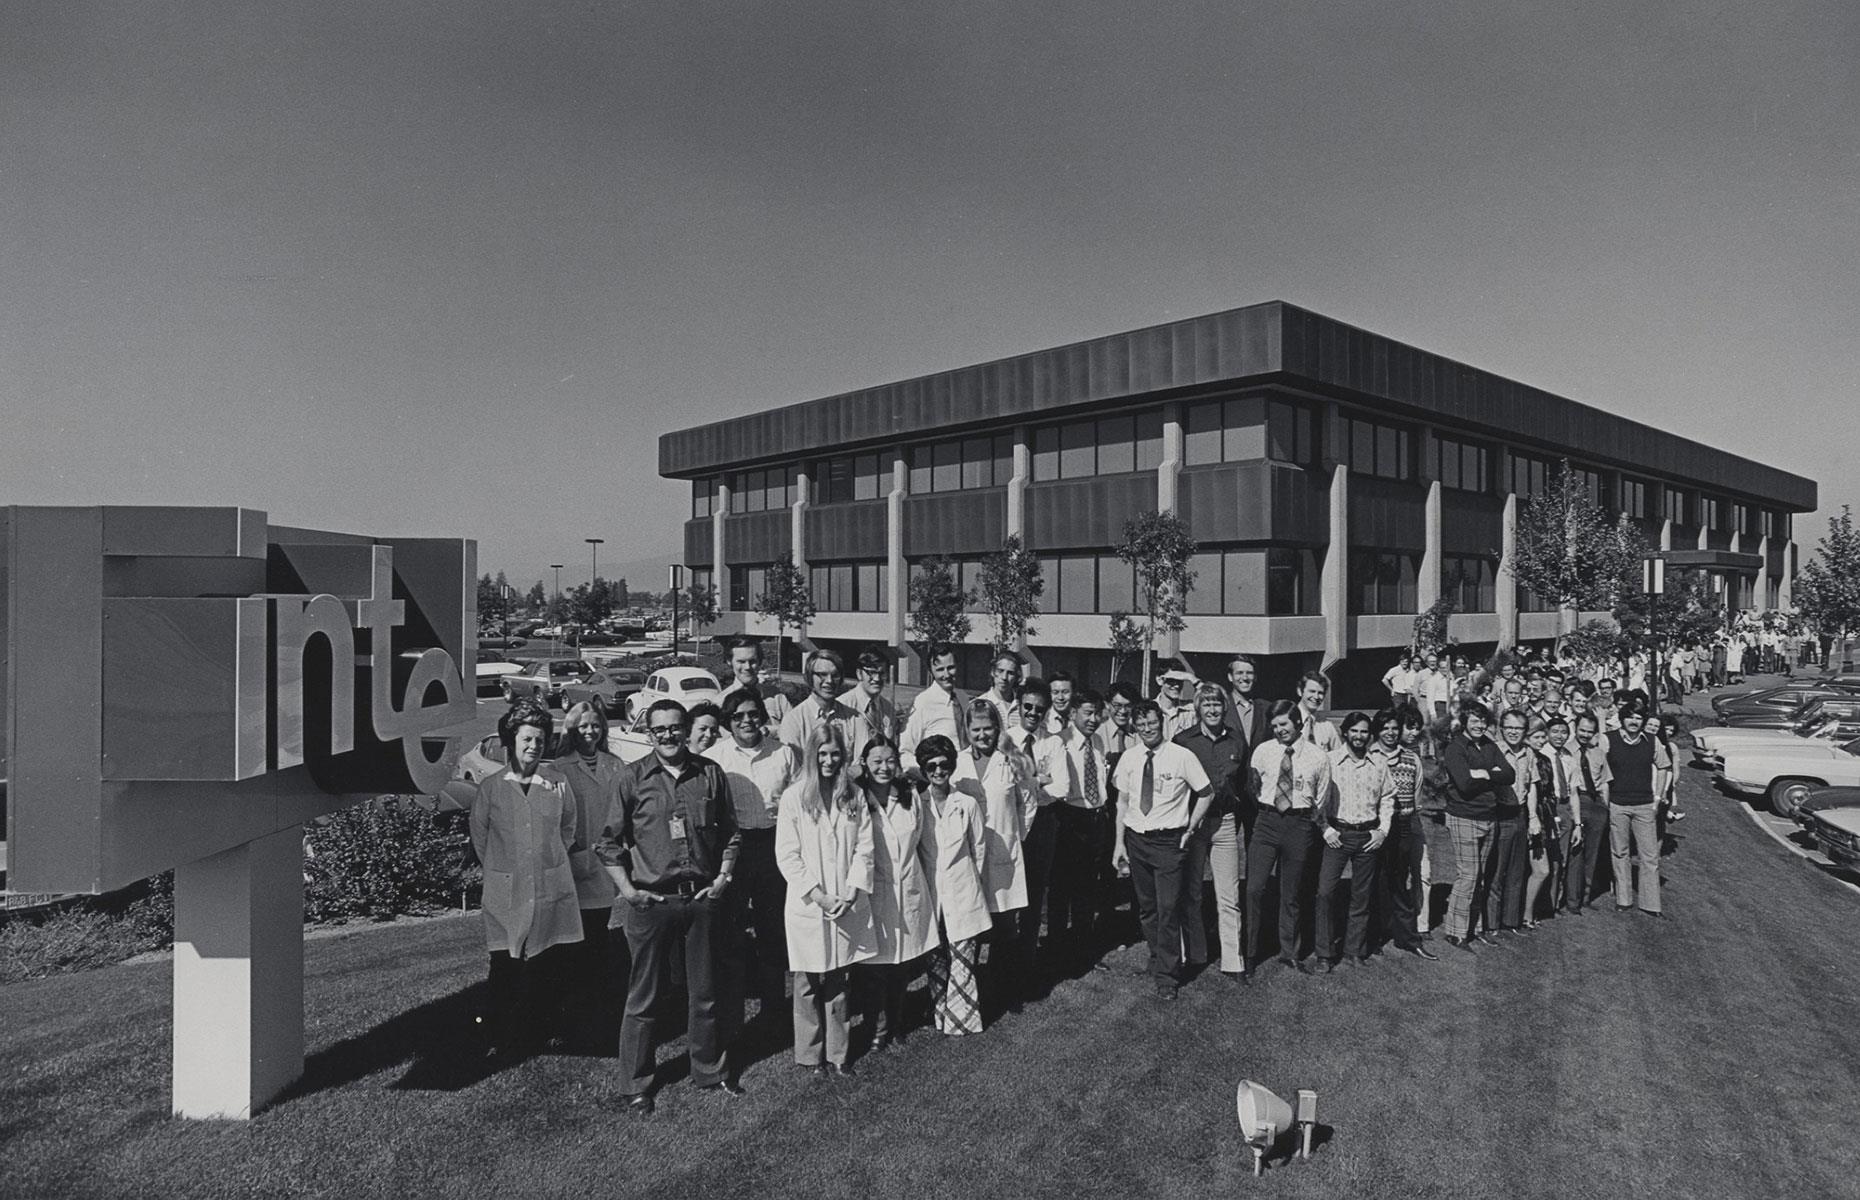 1968: Intel